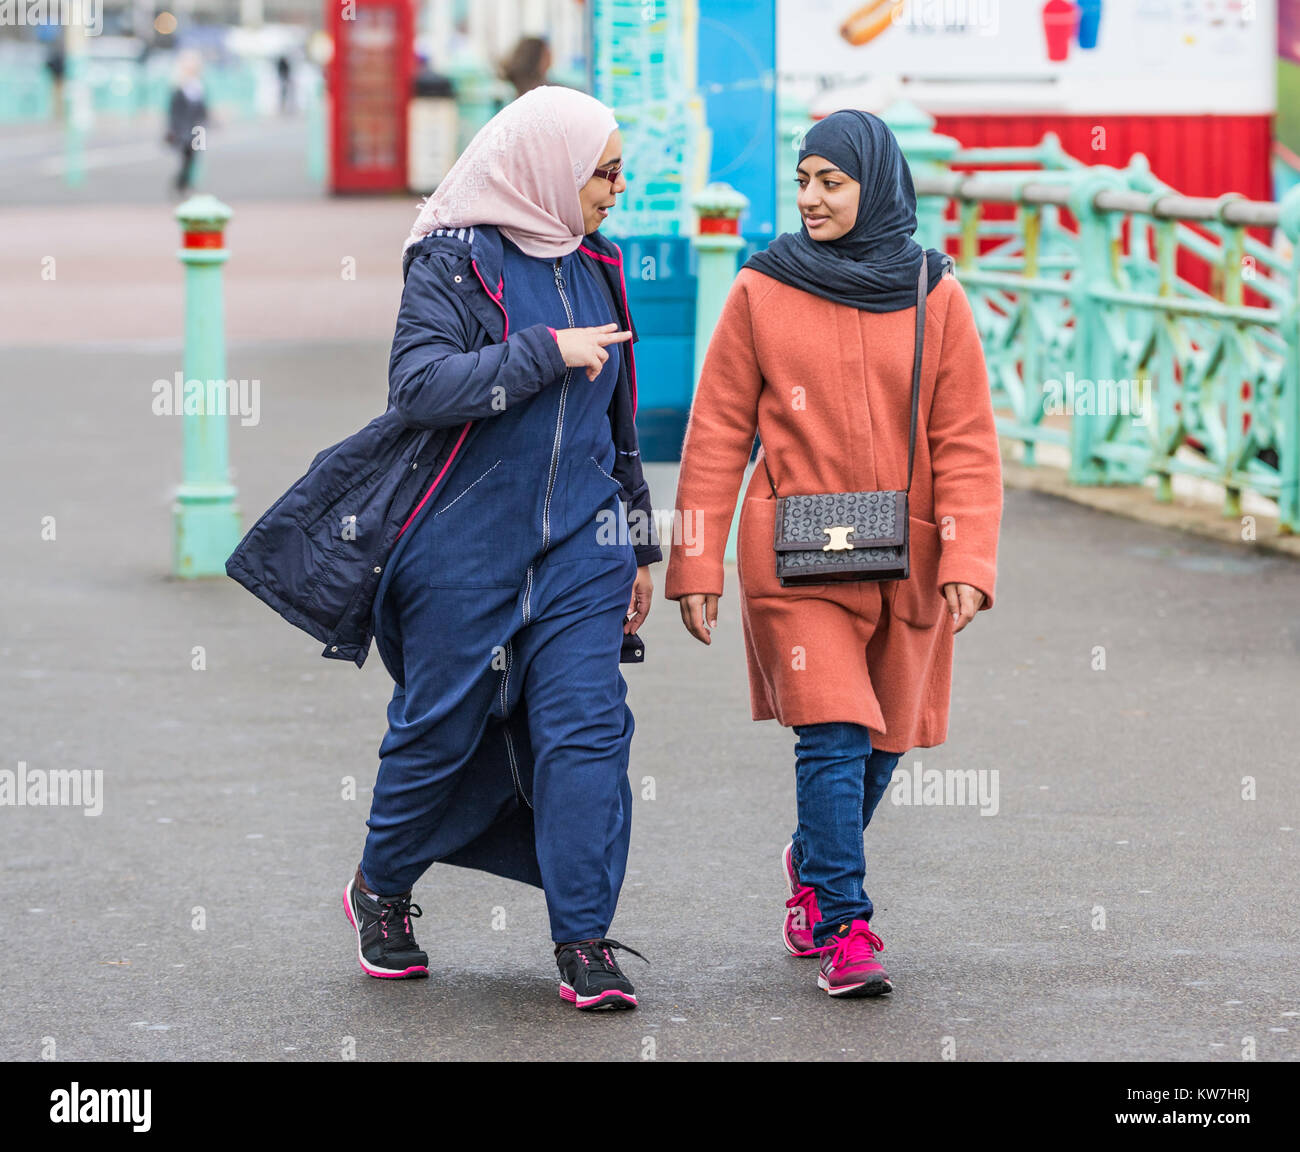 Une paire de femmes, probablement musulmane en raison de vêtements, portant un hijab marchant tout en parlant à Brighton, East Sussex, Angleterre, Royaume-Uni. Banque D'Images